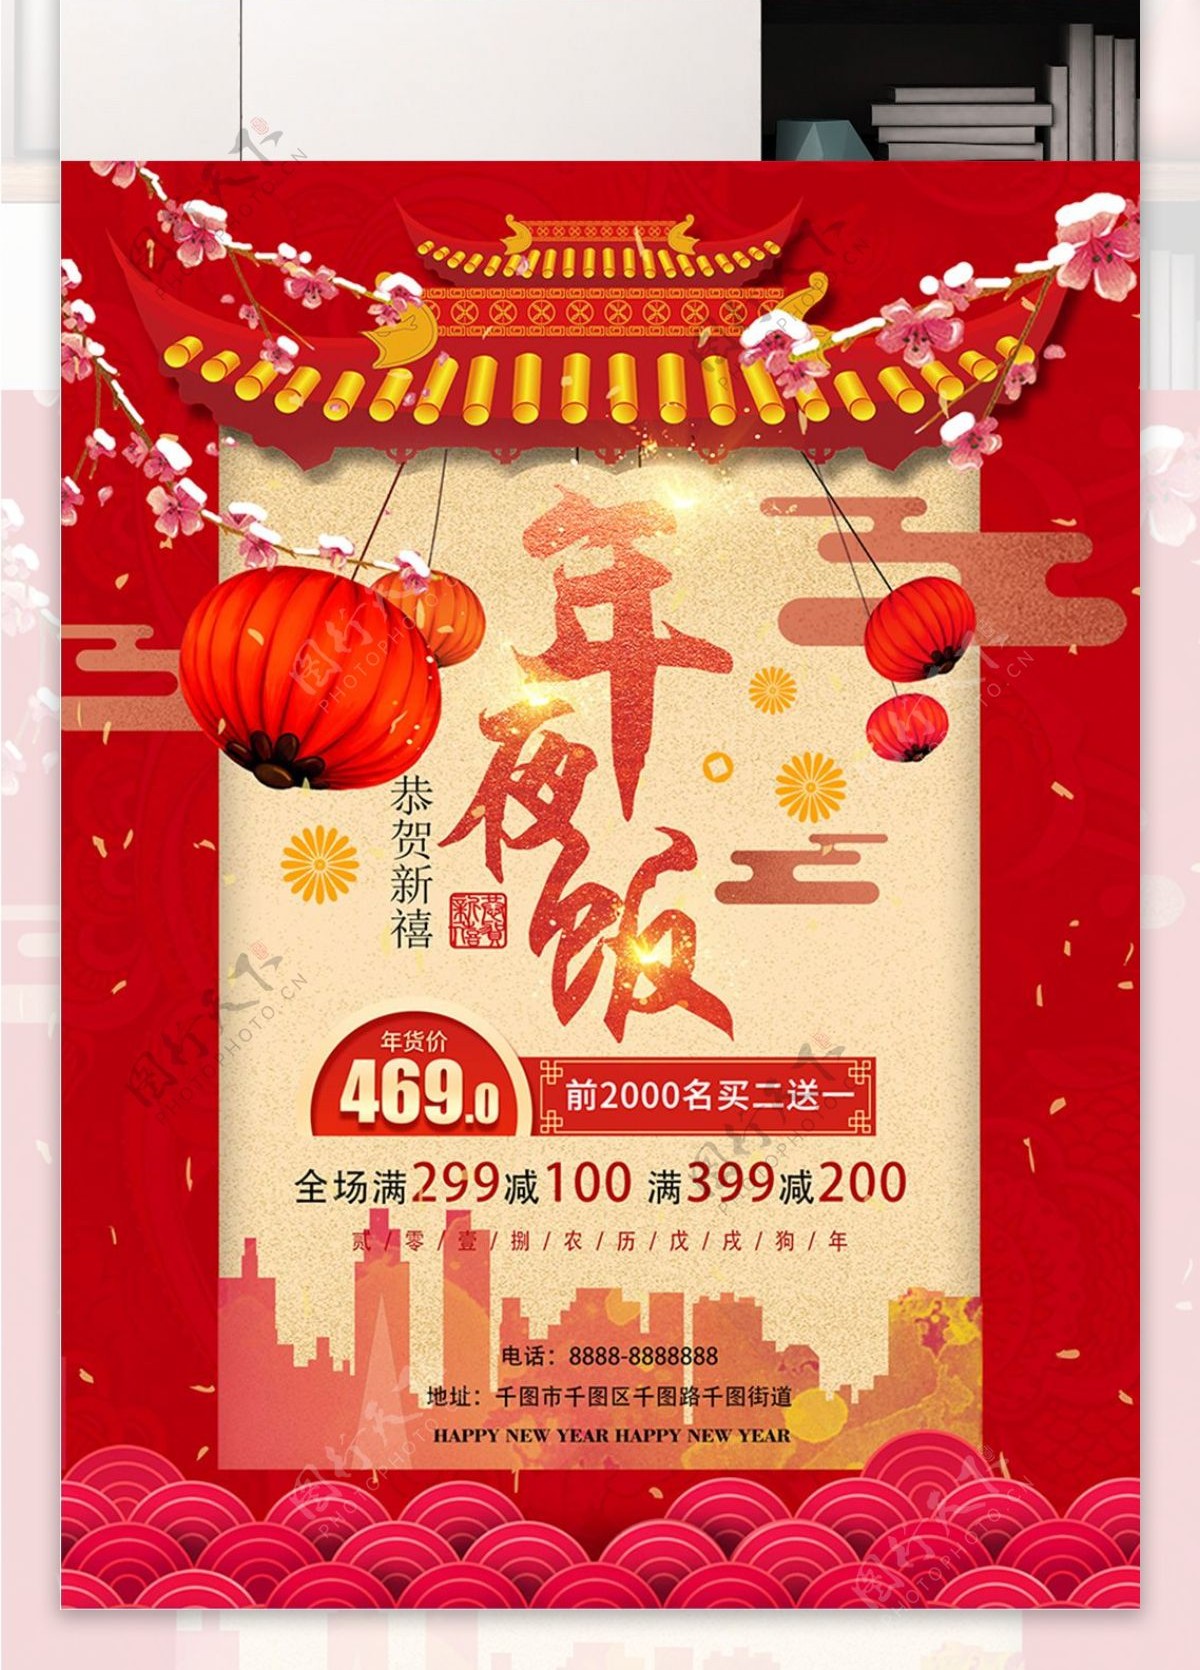 红色大气中国风除夕年夜饭主题宣传海报